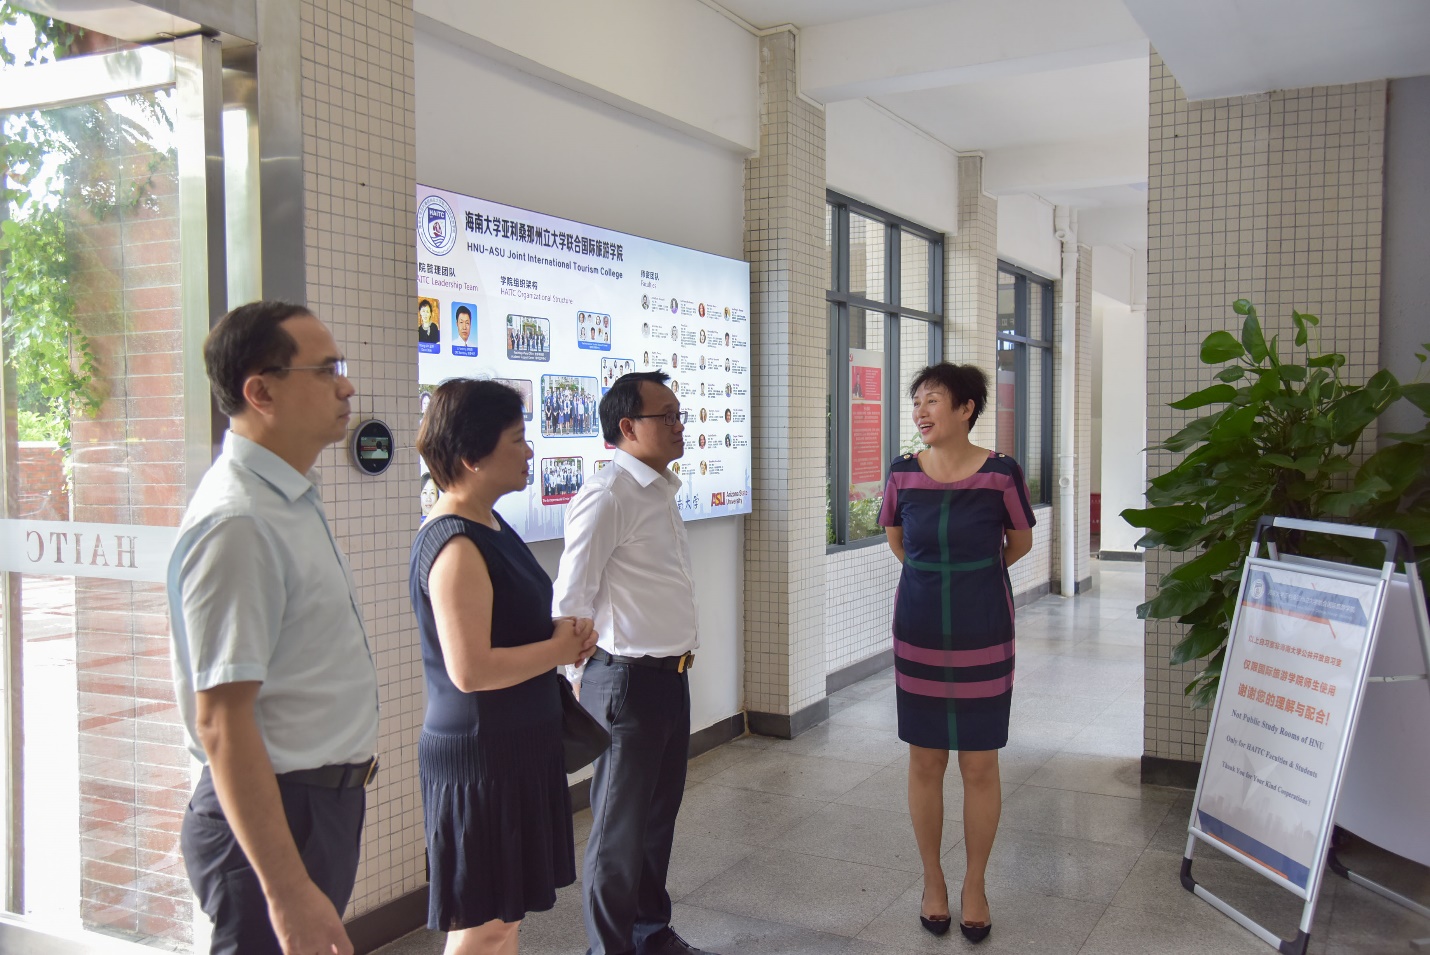 Bà Wang Lin – Viện trưởng Viện Du lịch quốc tế giới thiệu về Viện với các khách mời.